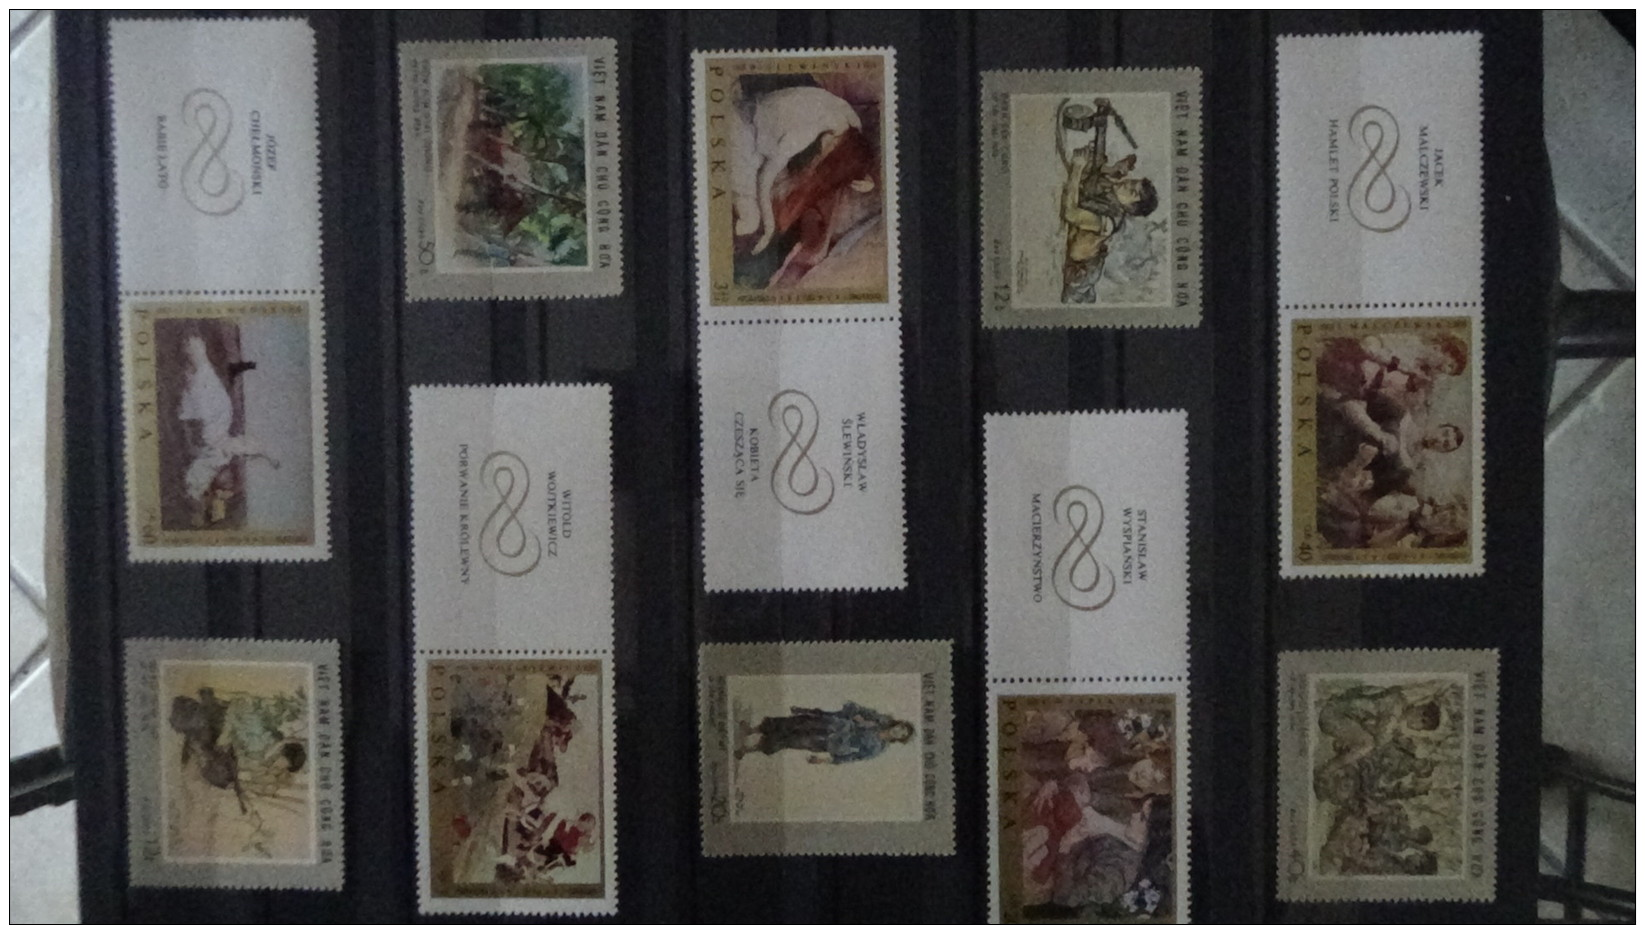 M Gros album de timbres et blocs ** du monde dont France. Très belle côte  !!!